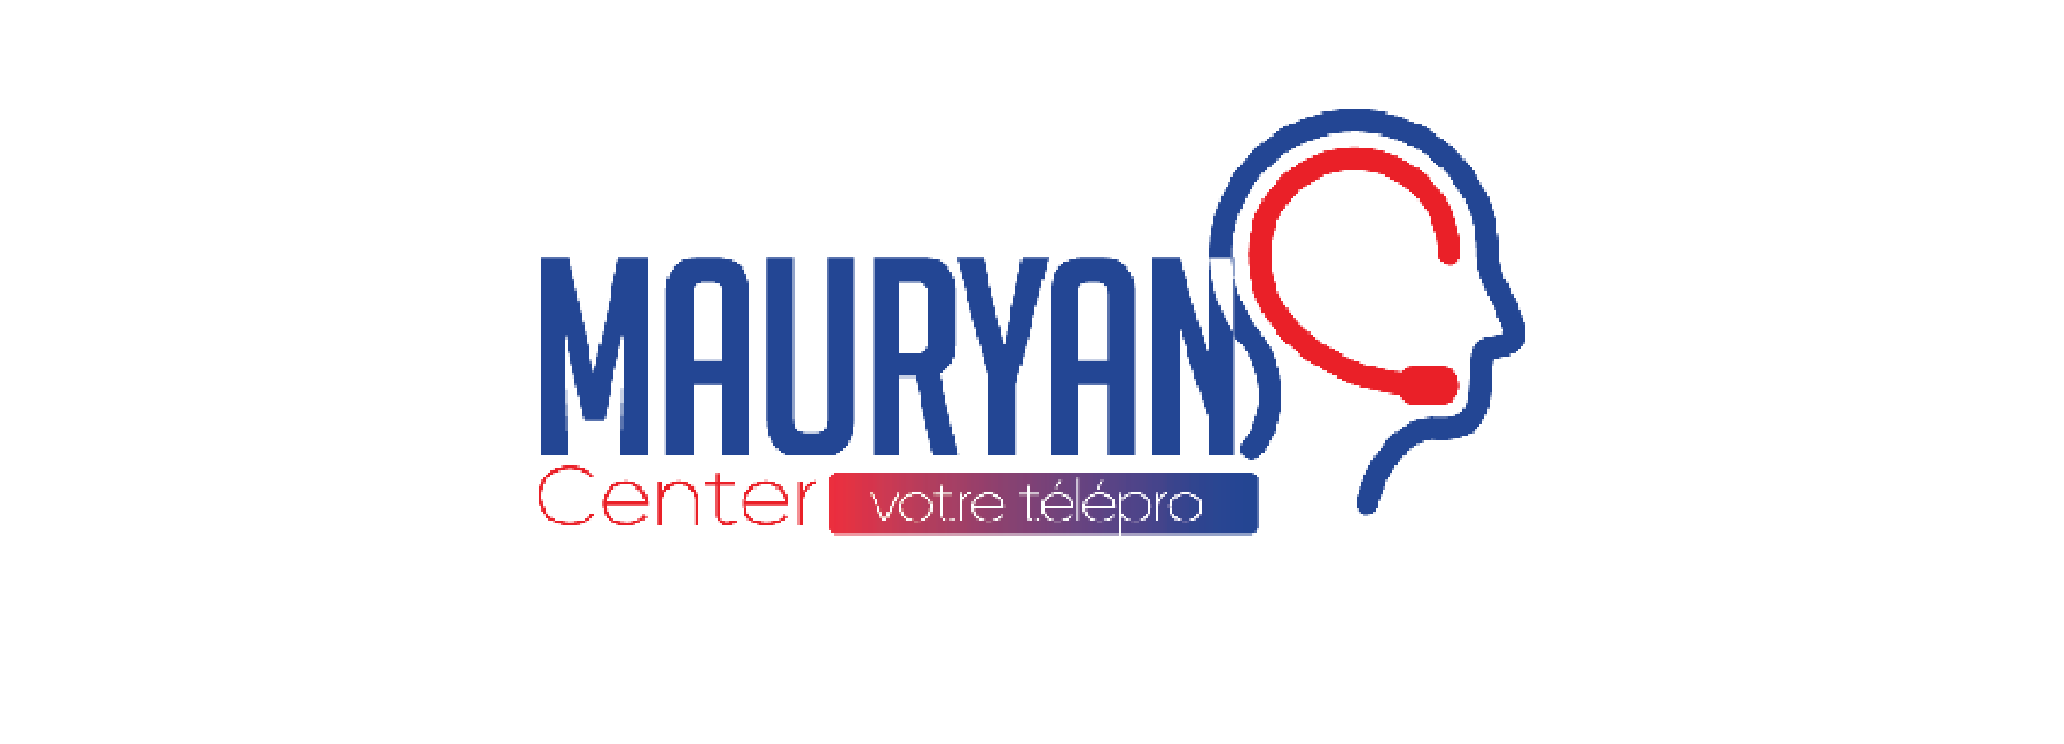 Mauryan Center logo